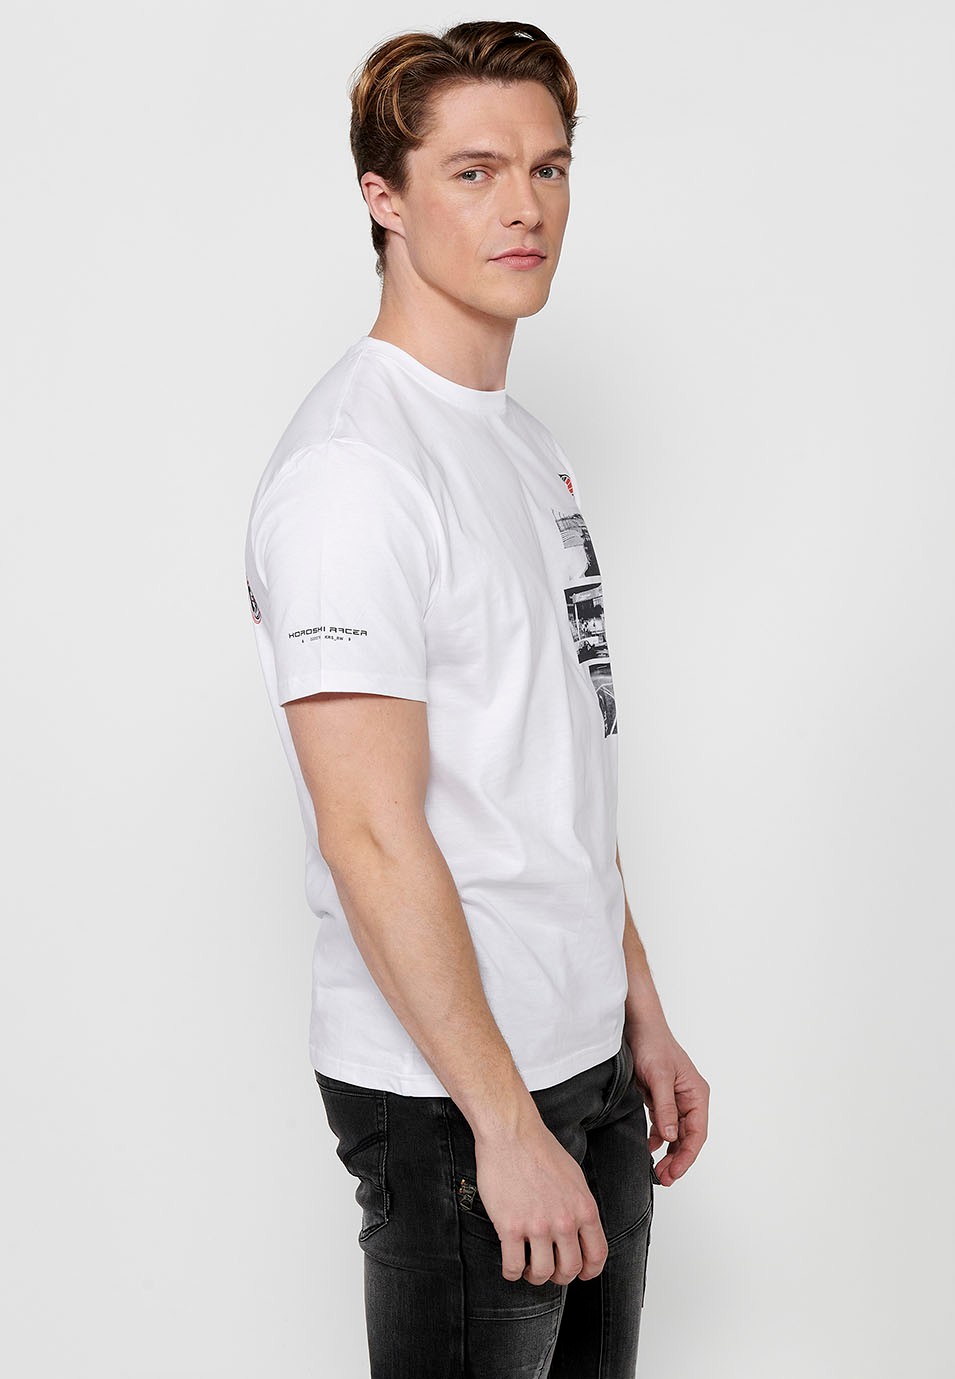 T-shirt homme blanc à manches courtes en coton, imprimé multicolore sur la poitrine 2